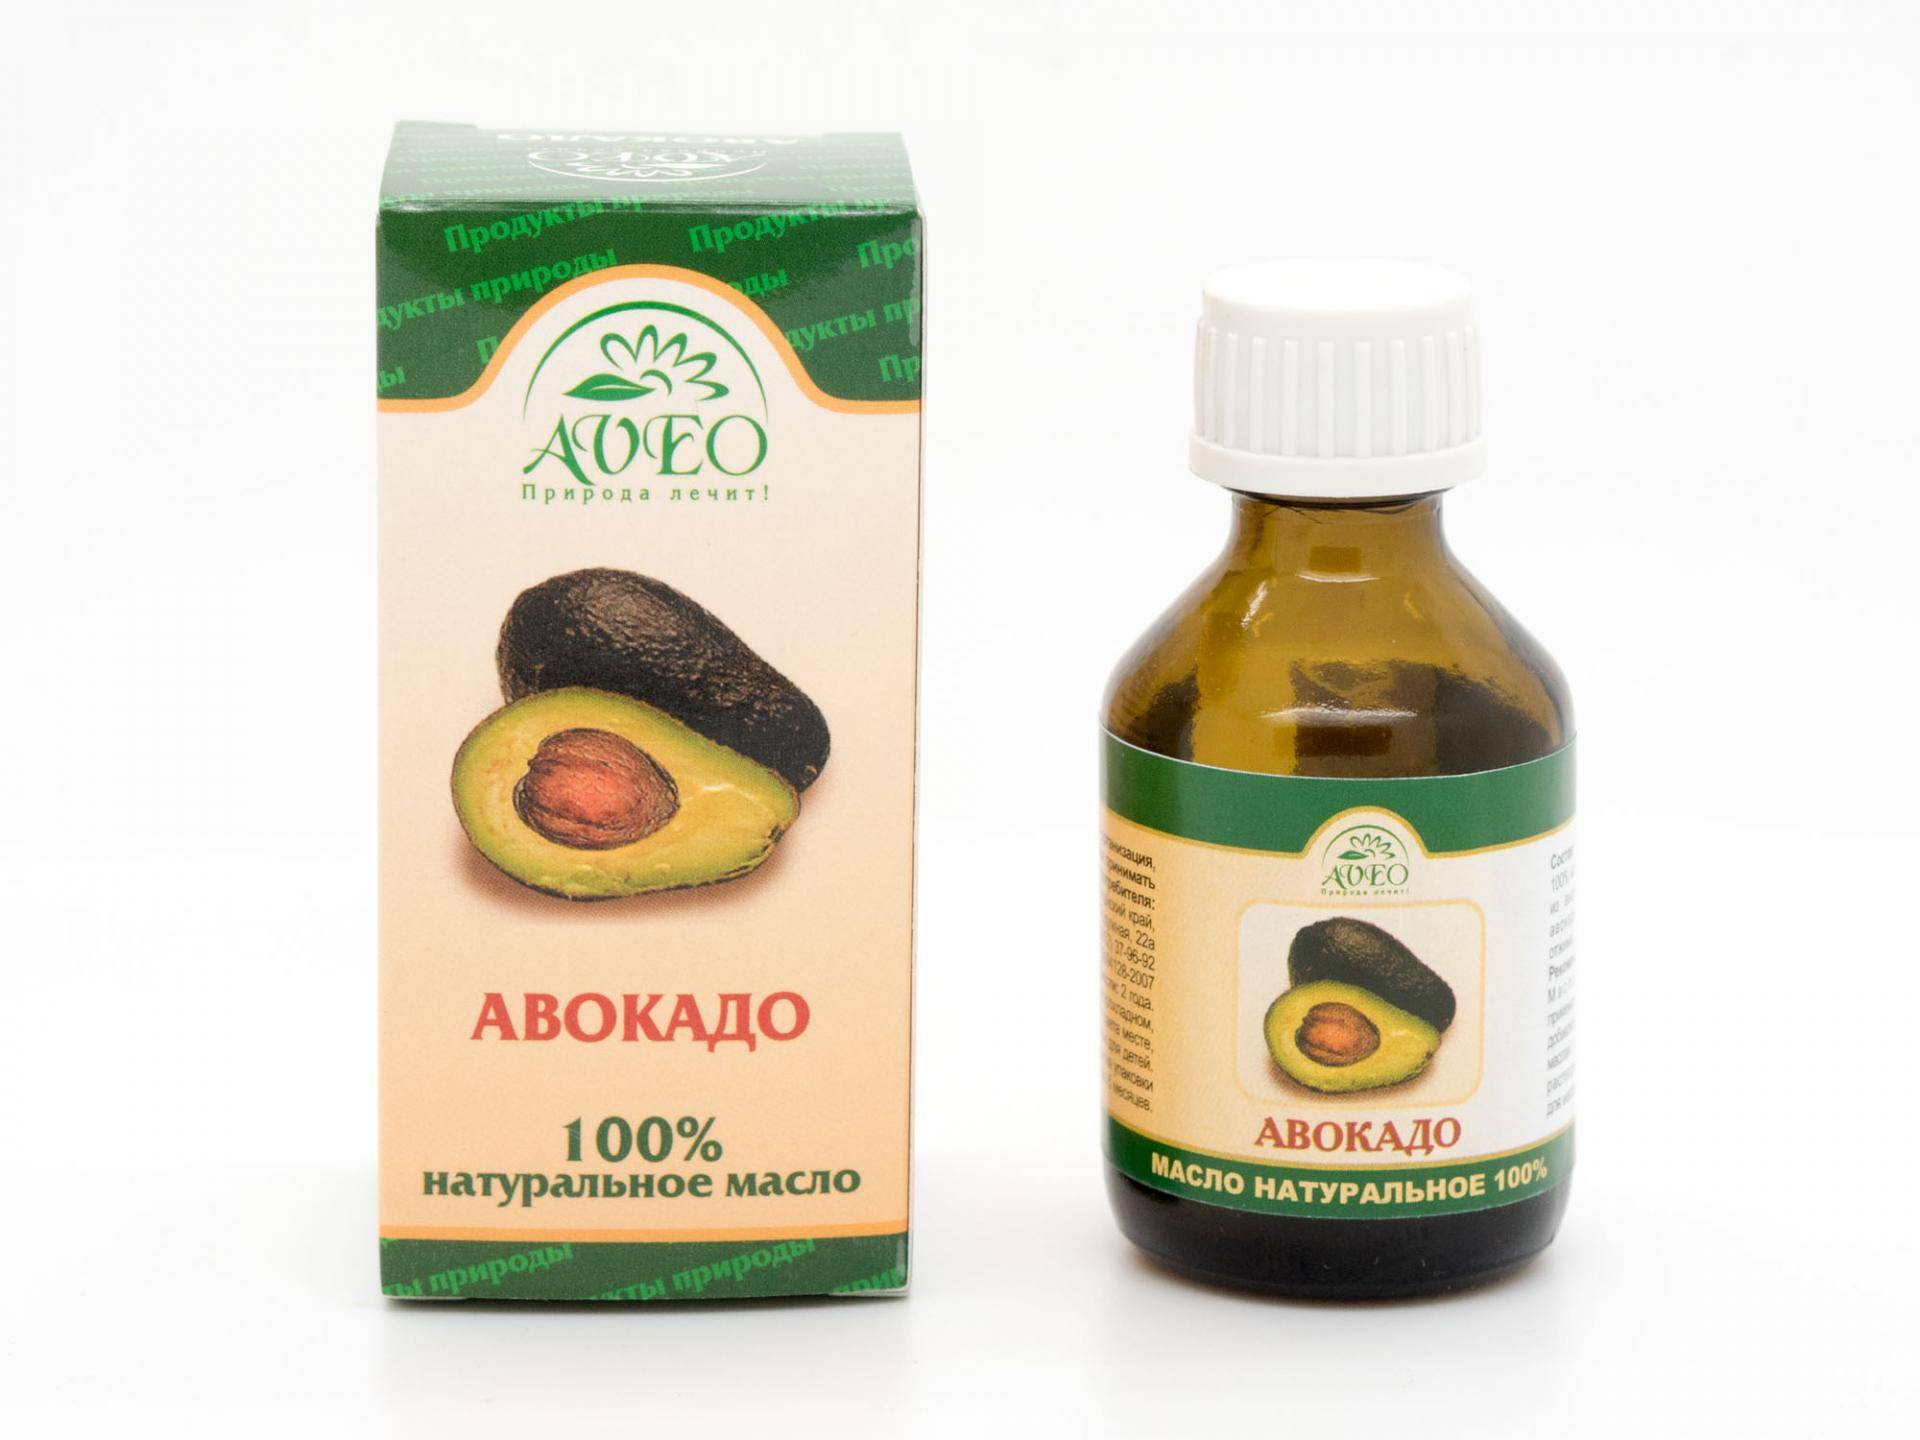 Как использовать масло авокадо для волос, лица и тела